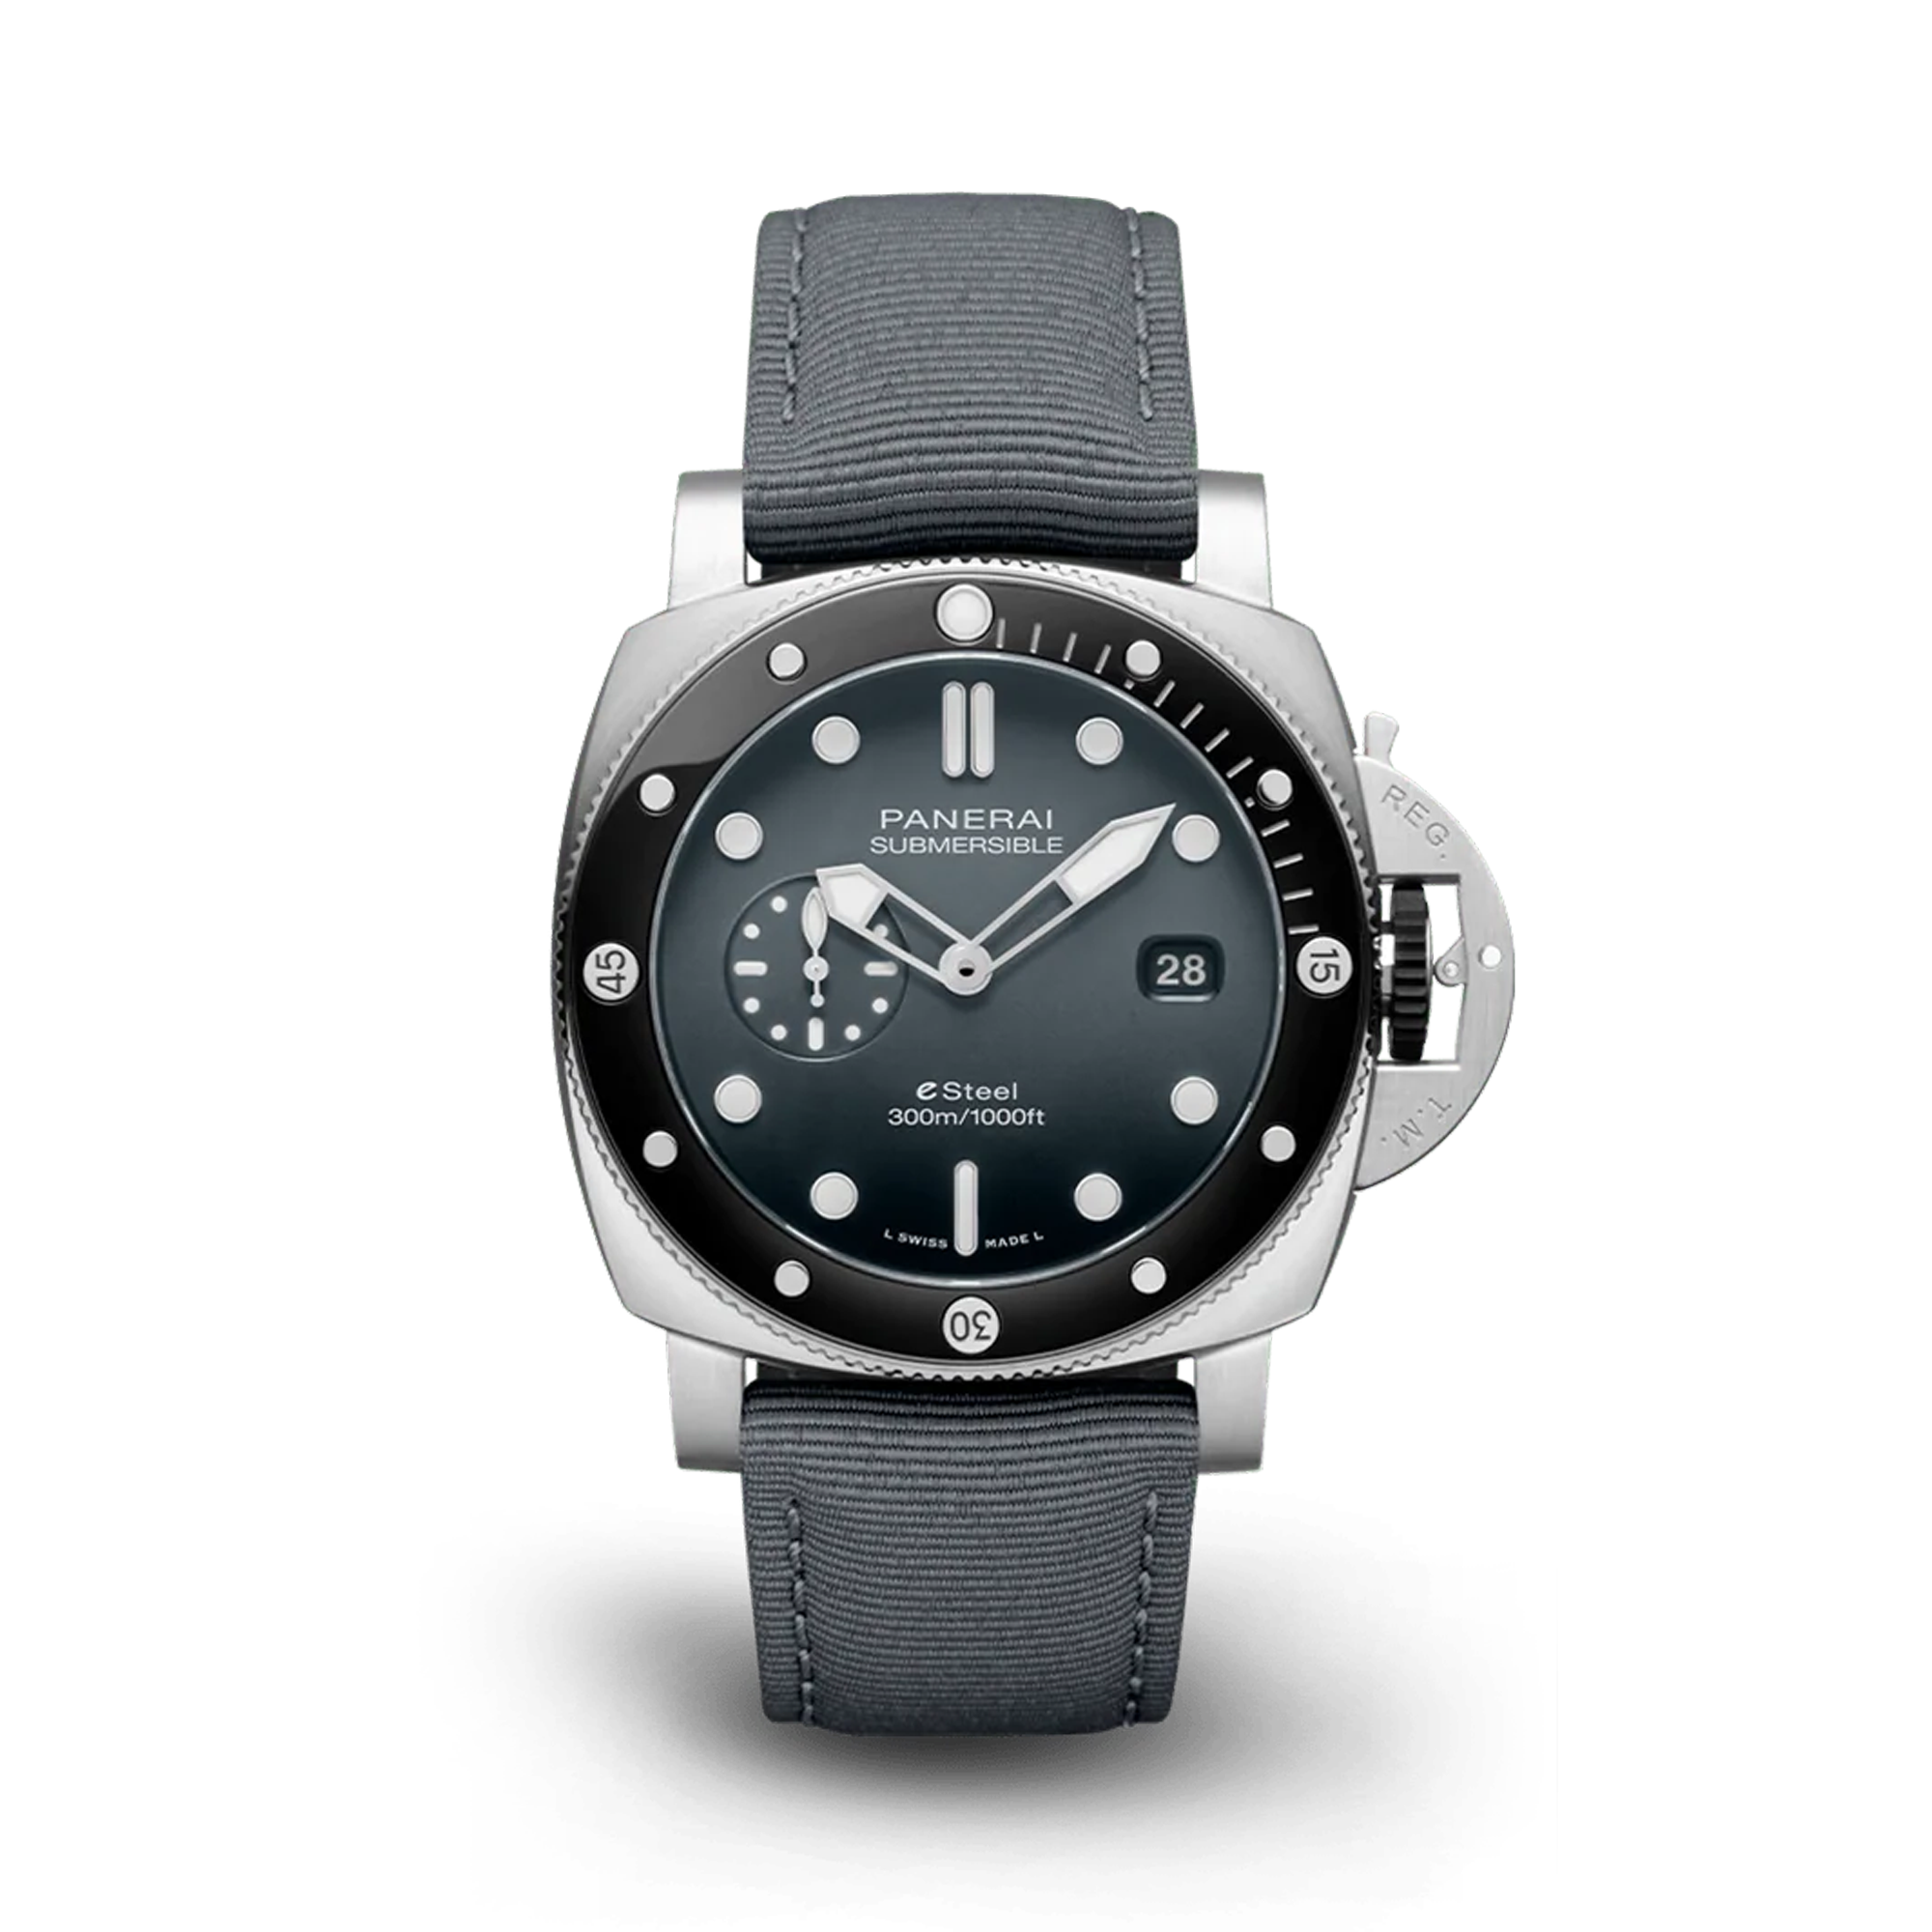 Panerai Submersible QuarantaQuattro ESteel™ Grigio Roccia 44mm, Grey Dial, Baton Numerals_1